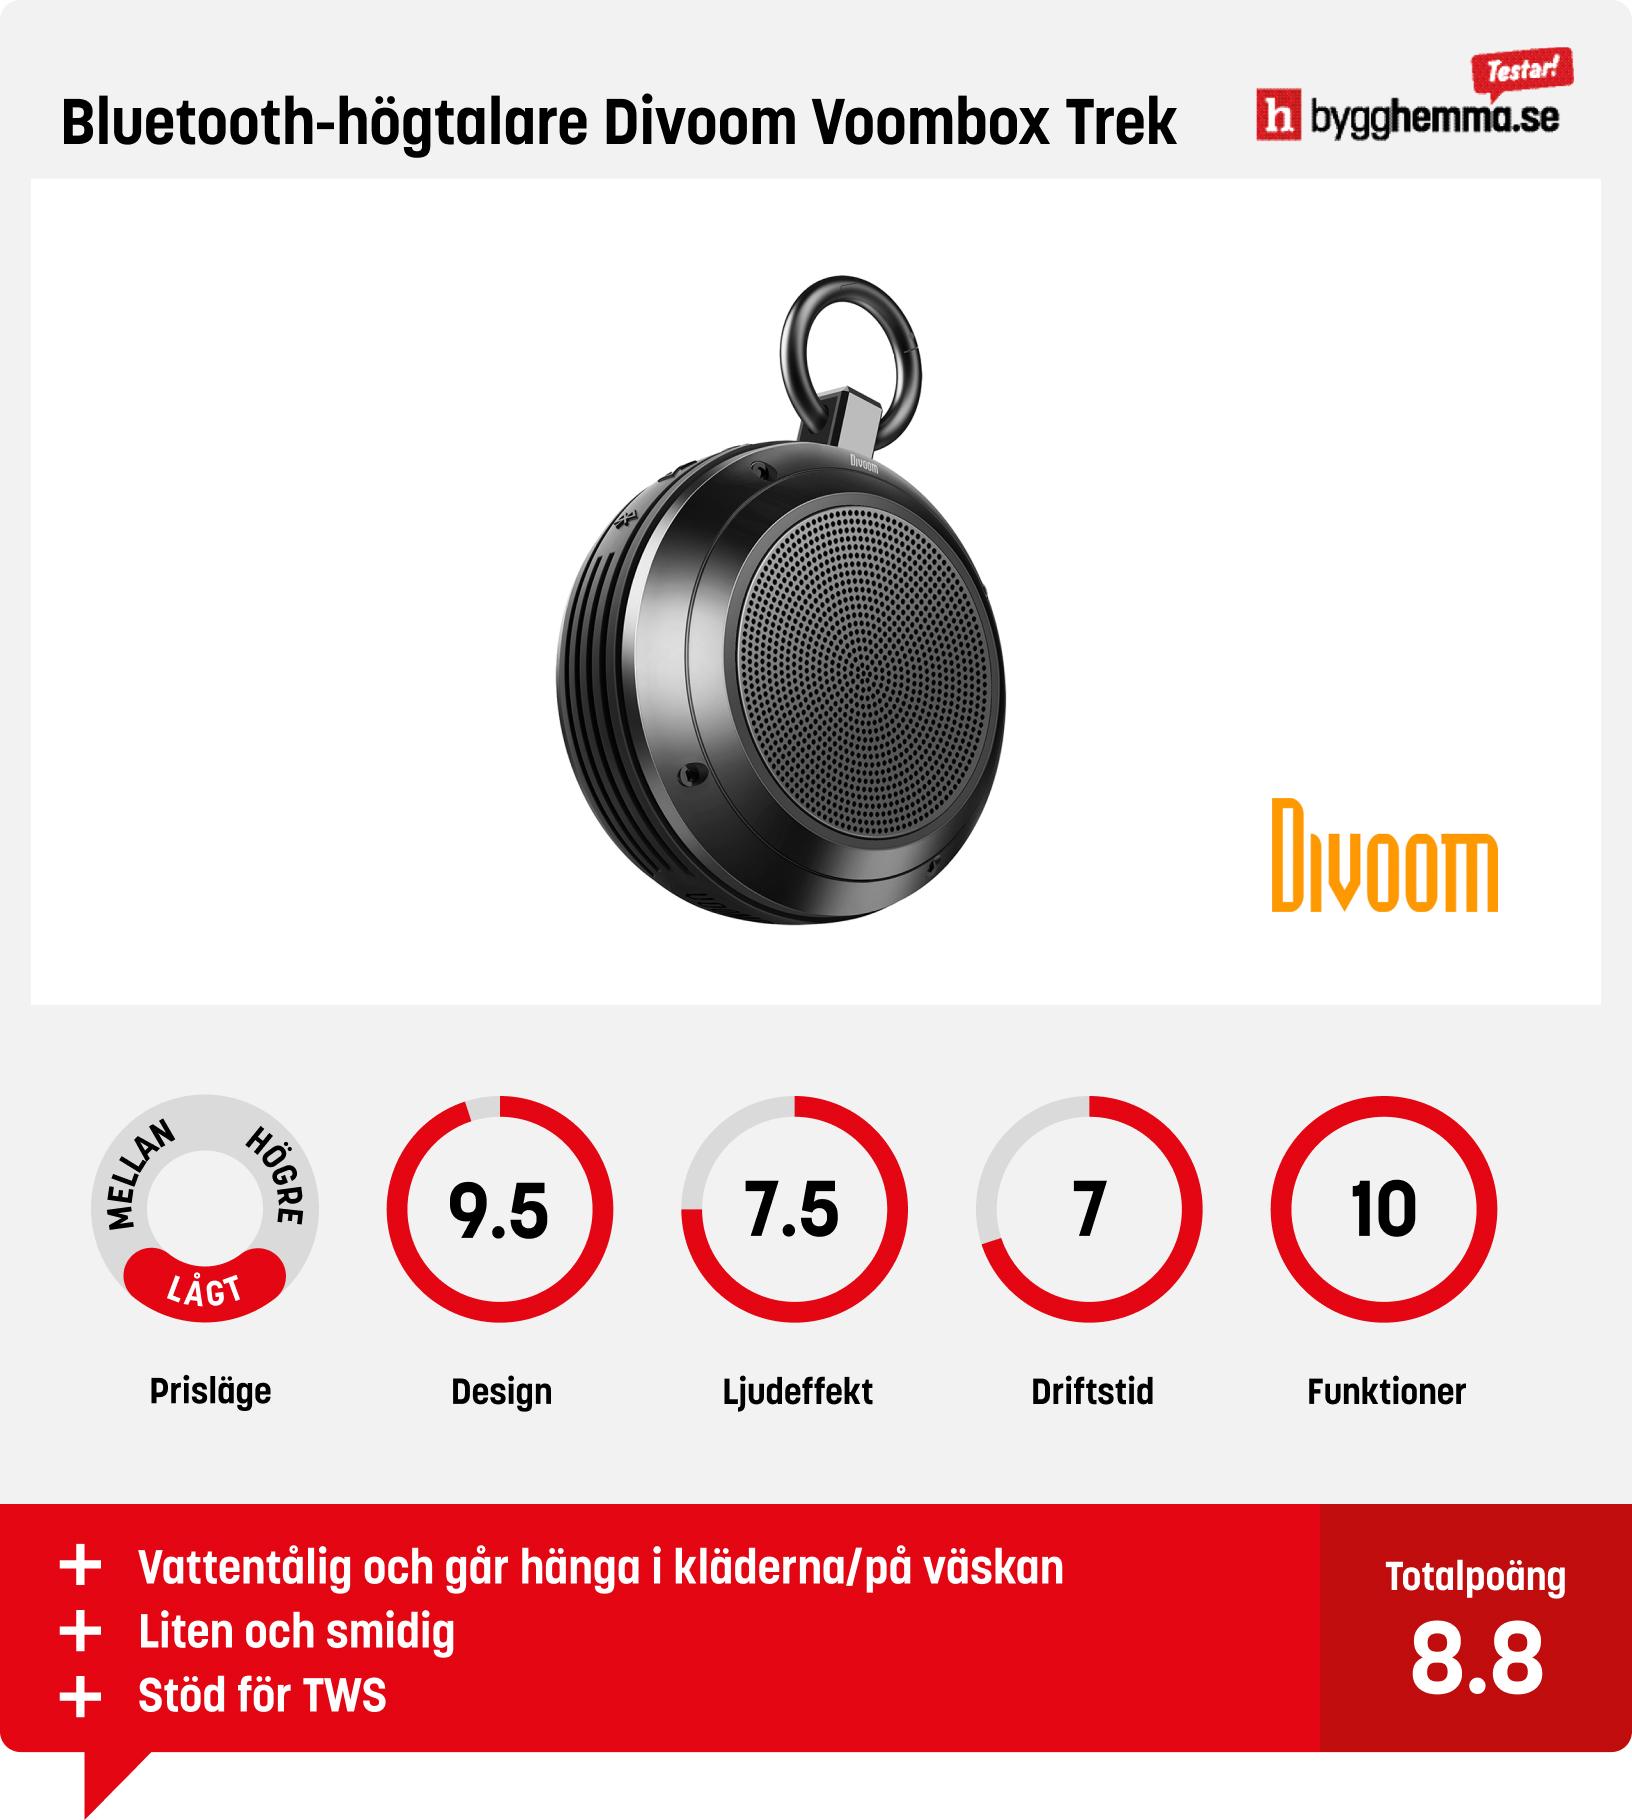 Bluetooth högtalare bäst i test -  Bluetooth-högtalare Divoom Voombox Trek